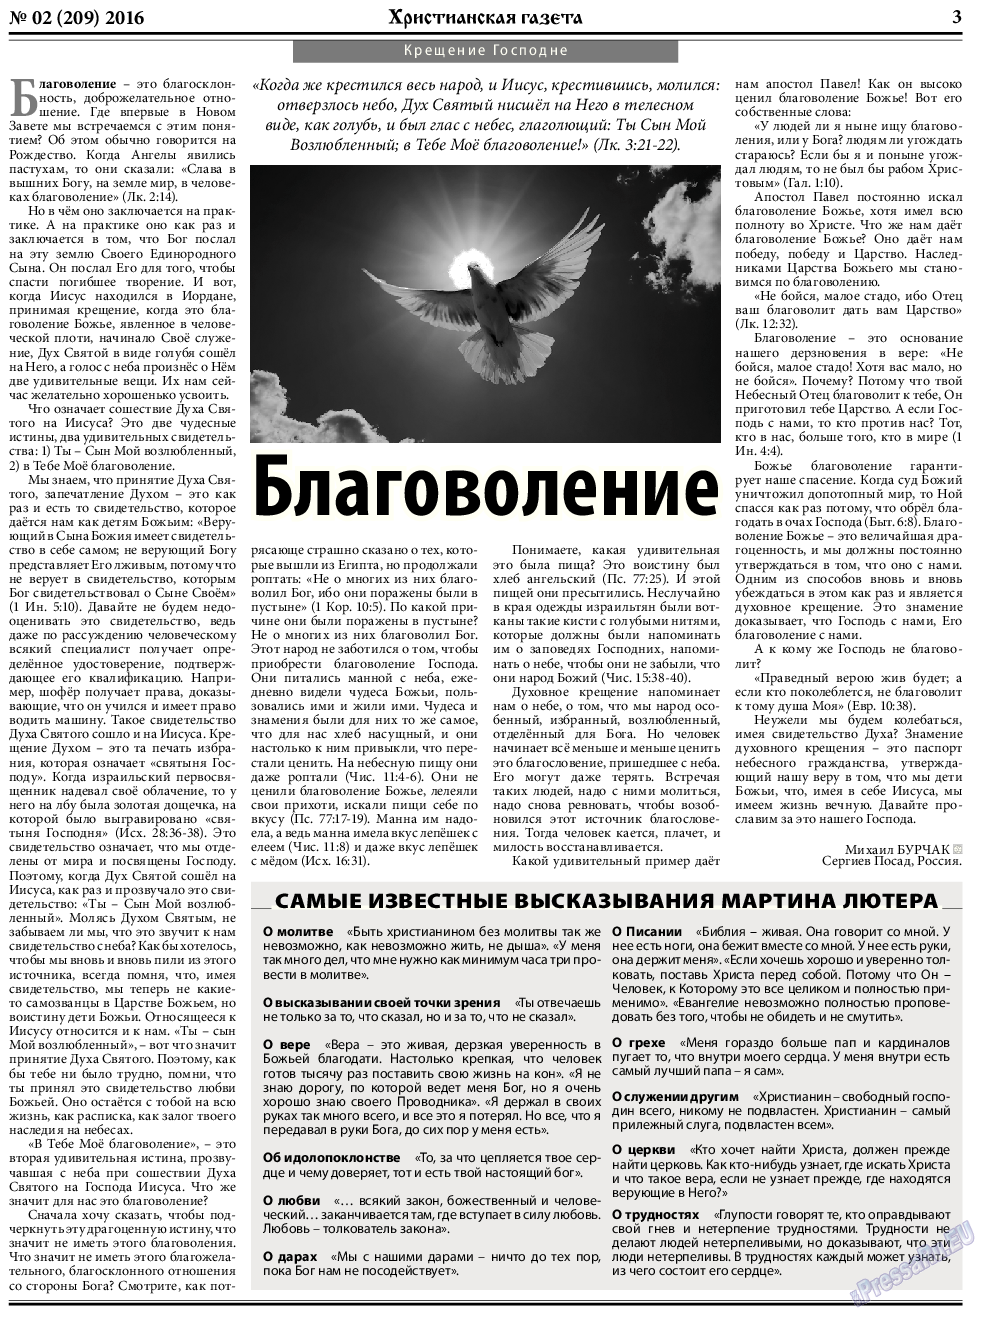 Христианская газета, газета. 2016 №2 стр.3